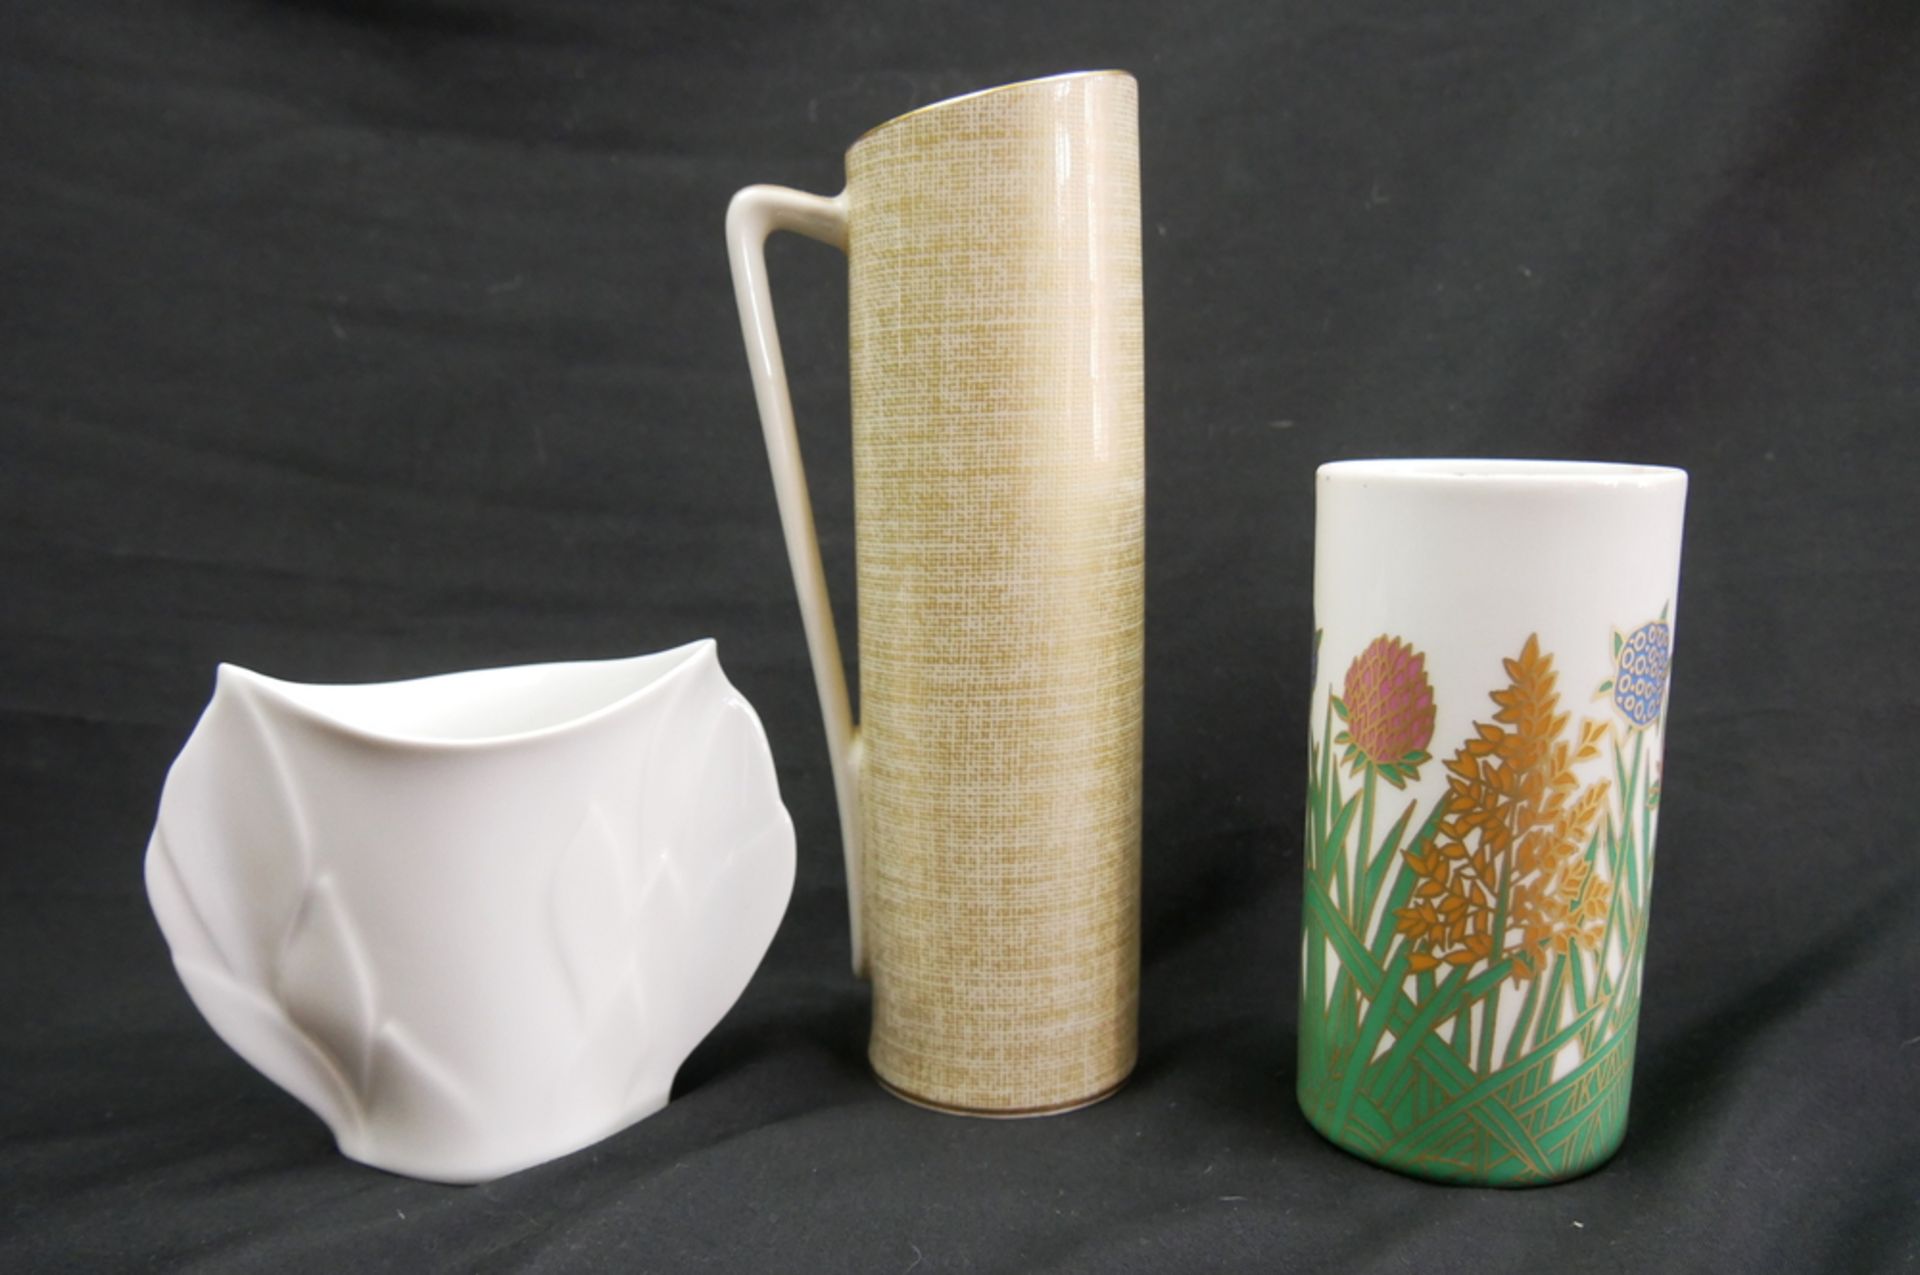 Lot Porzellan Vasen, insgesamt 3 Stück. Verschiedene Modelle und Marken, dabei Rosenthal, Royal